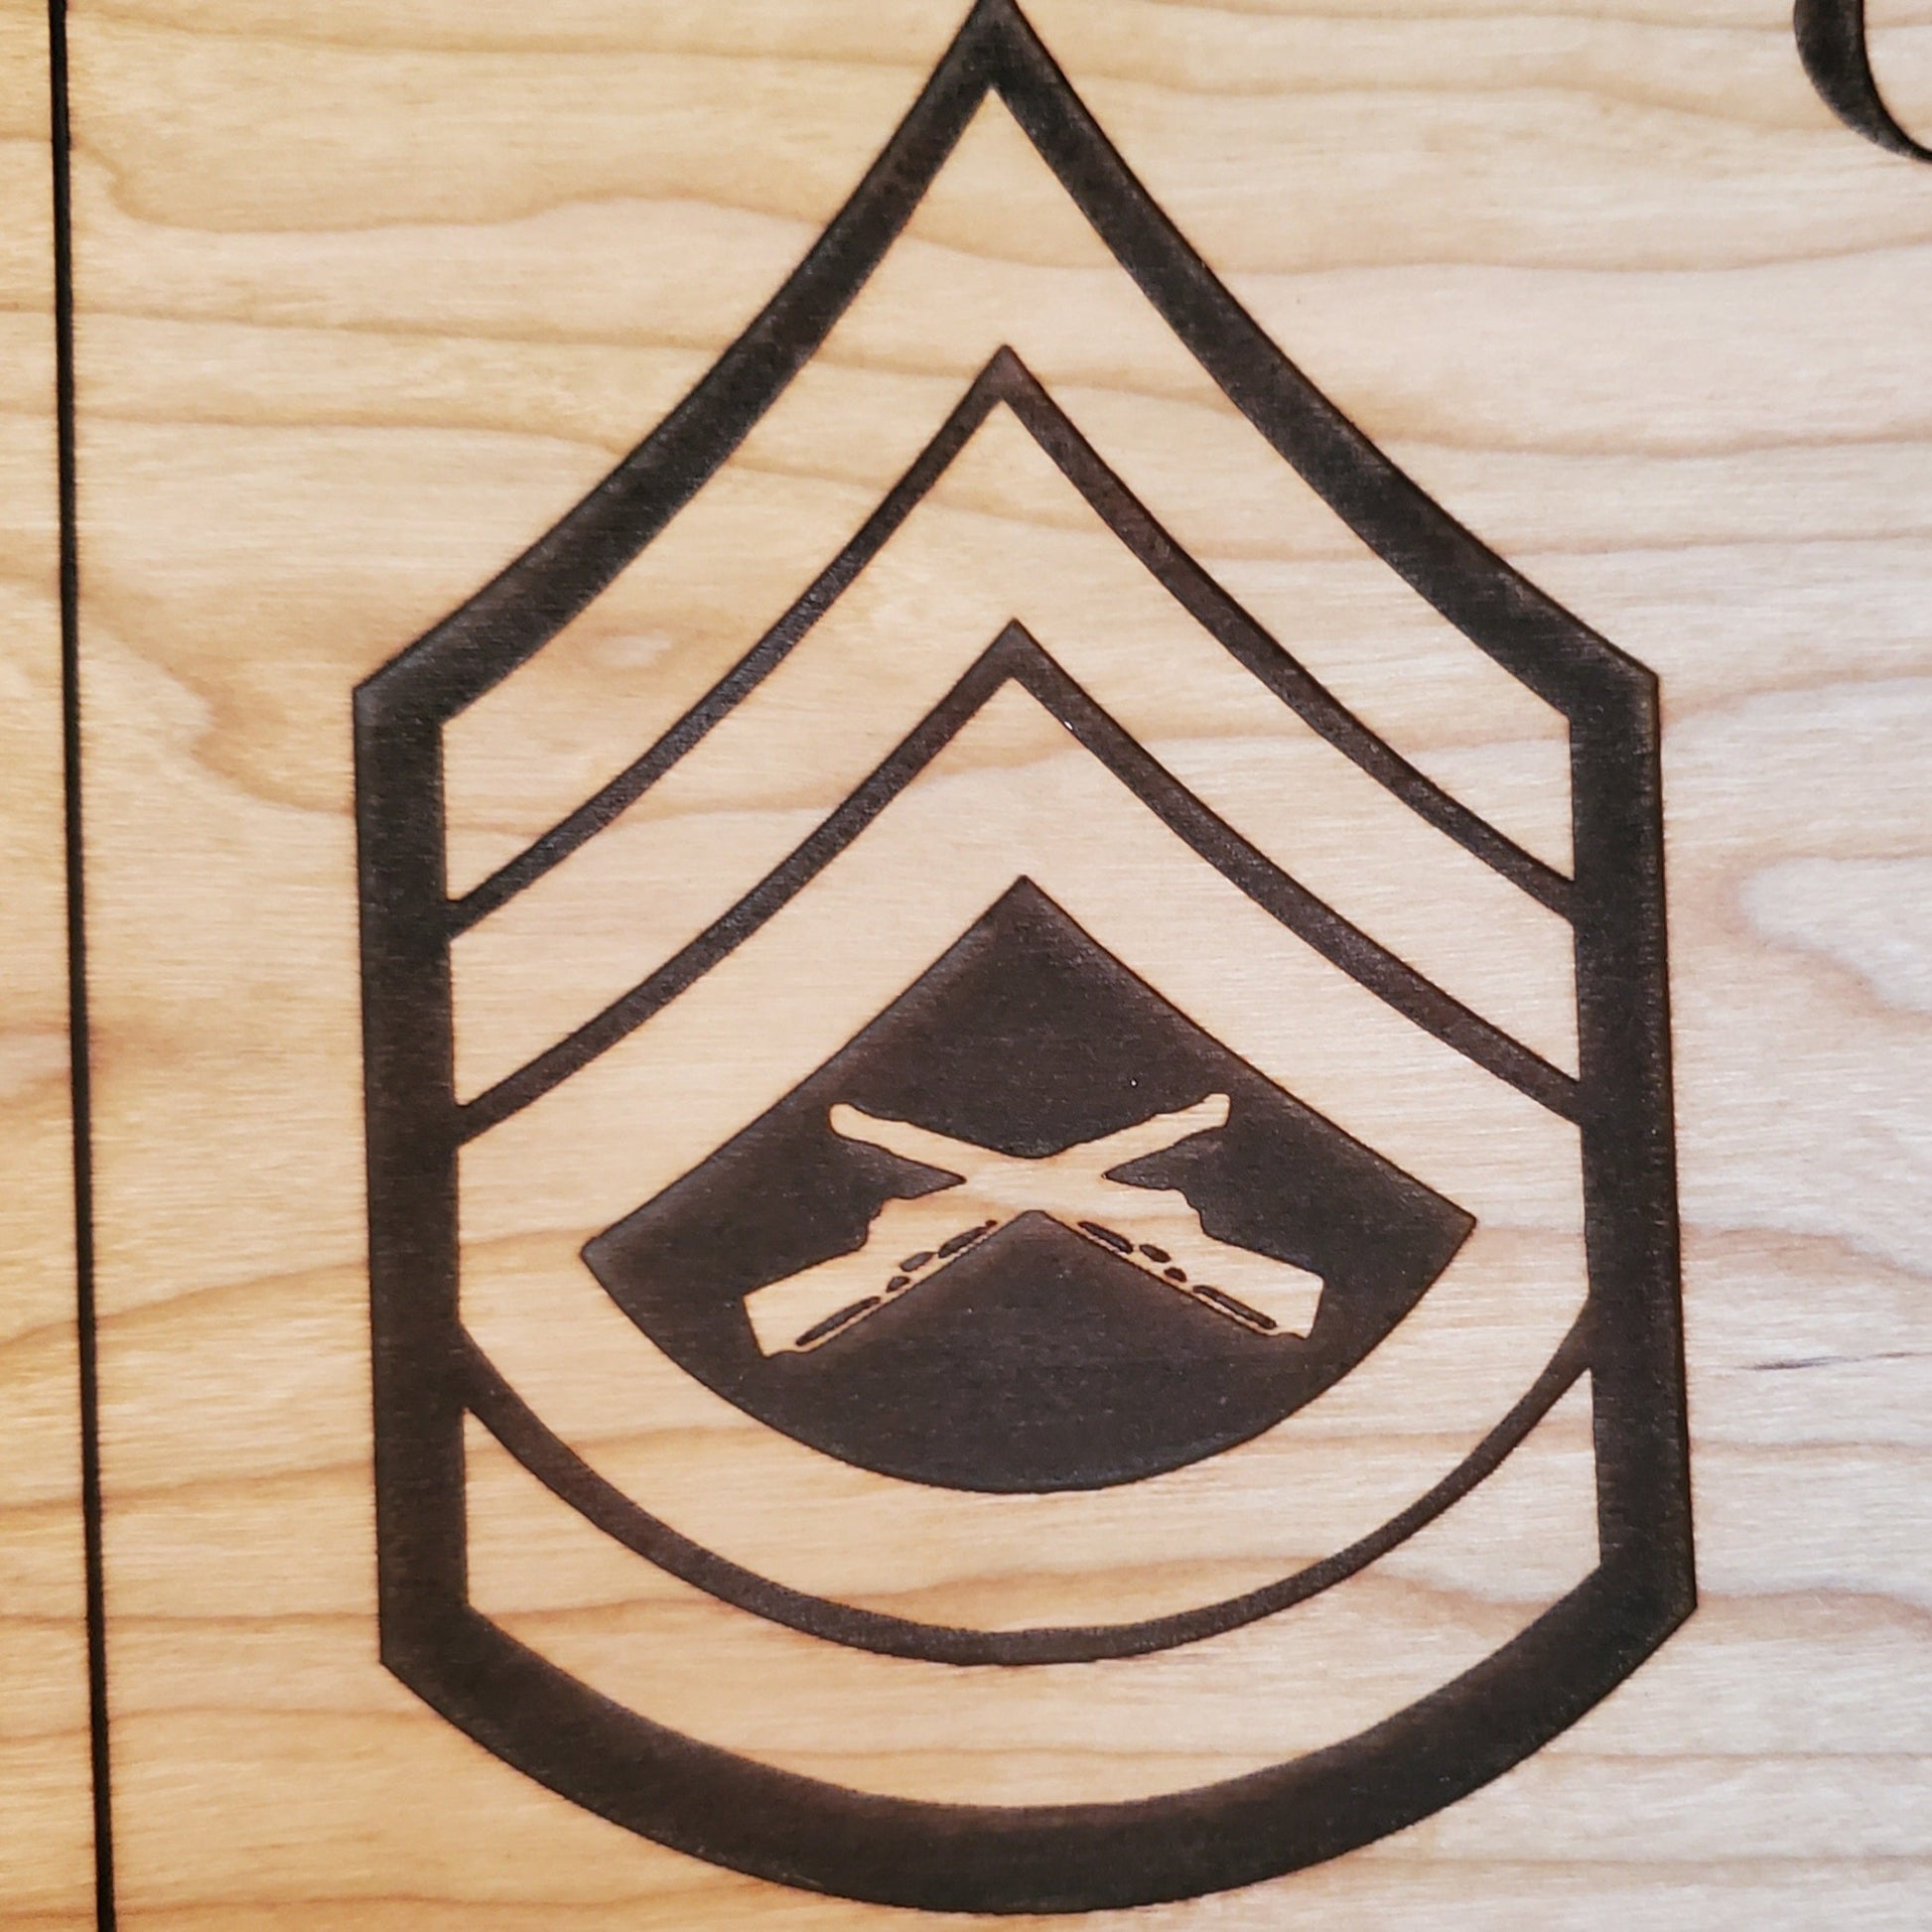 USMC insignia plaque